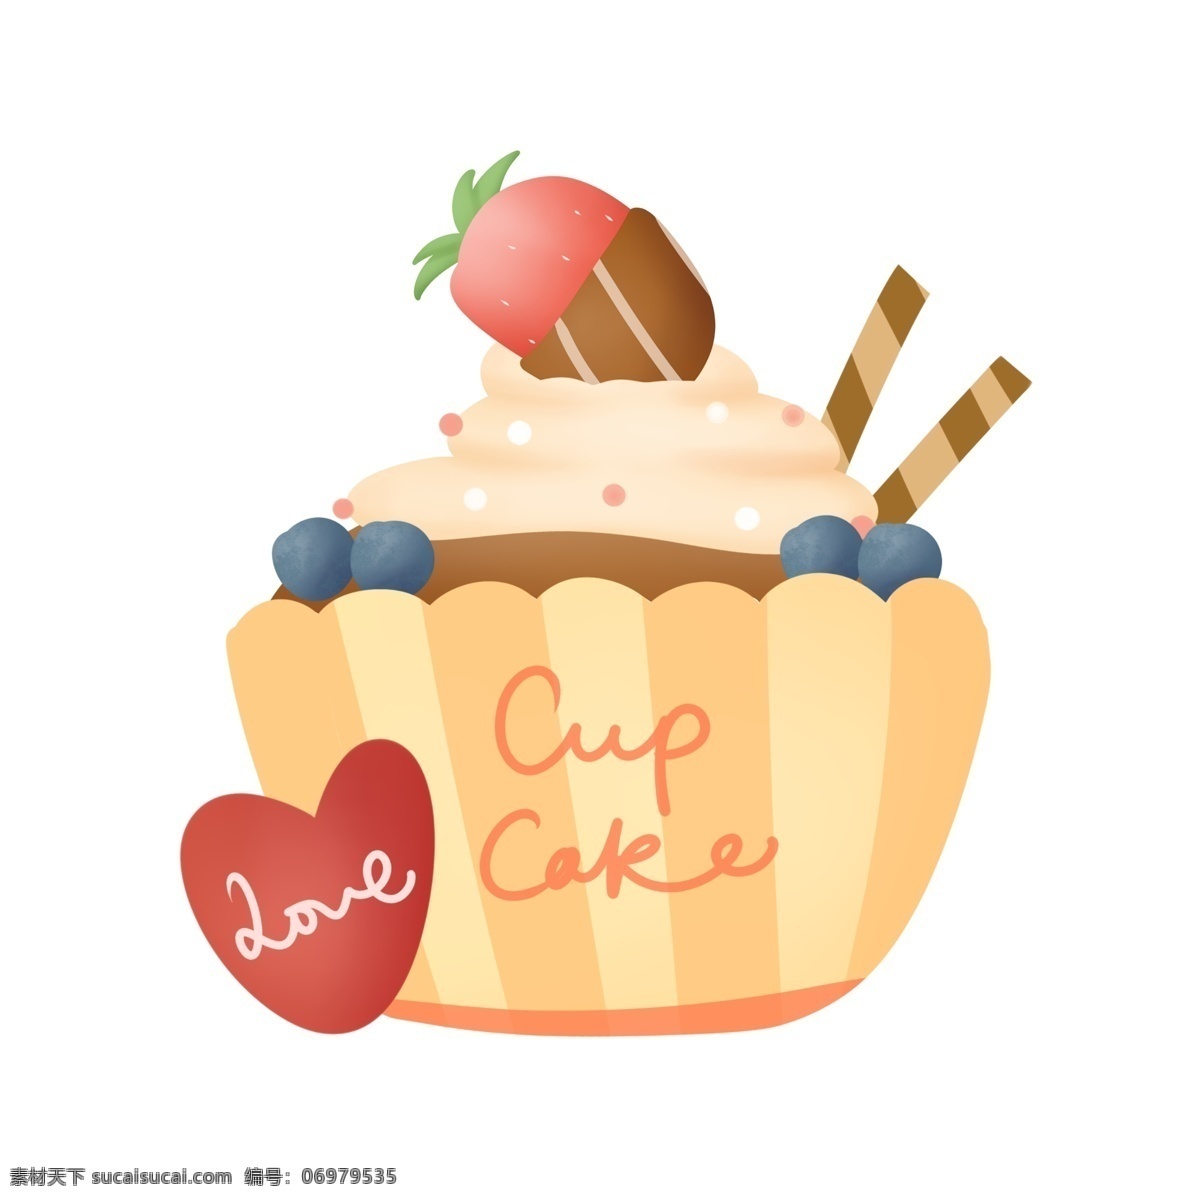 甜蜜杯子蛋糕 情人节 甜品 甜蜜 杯子蛋糕 草莓